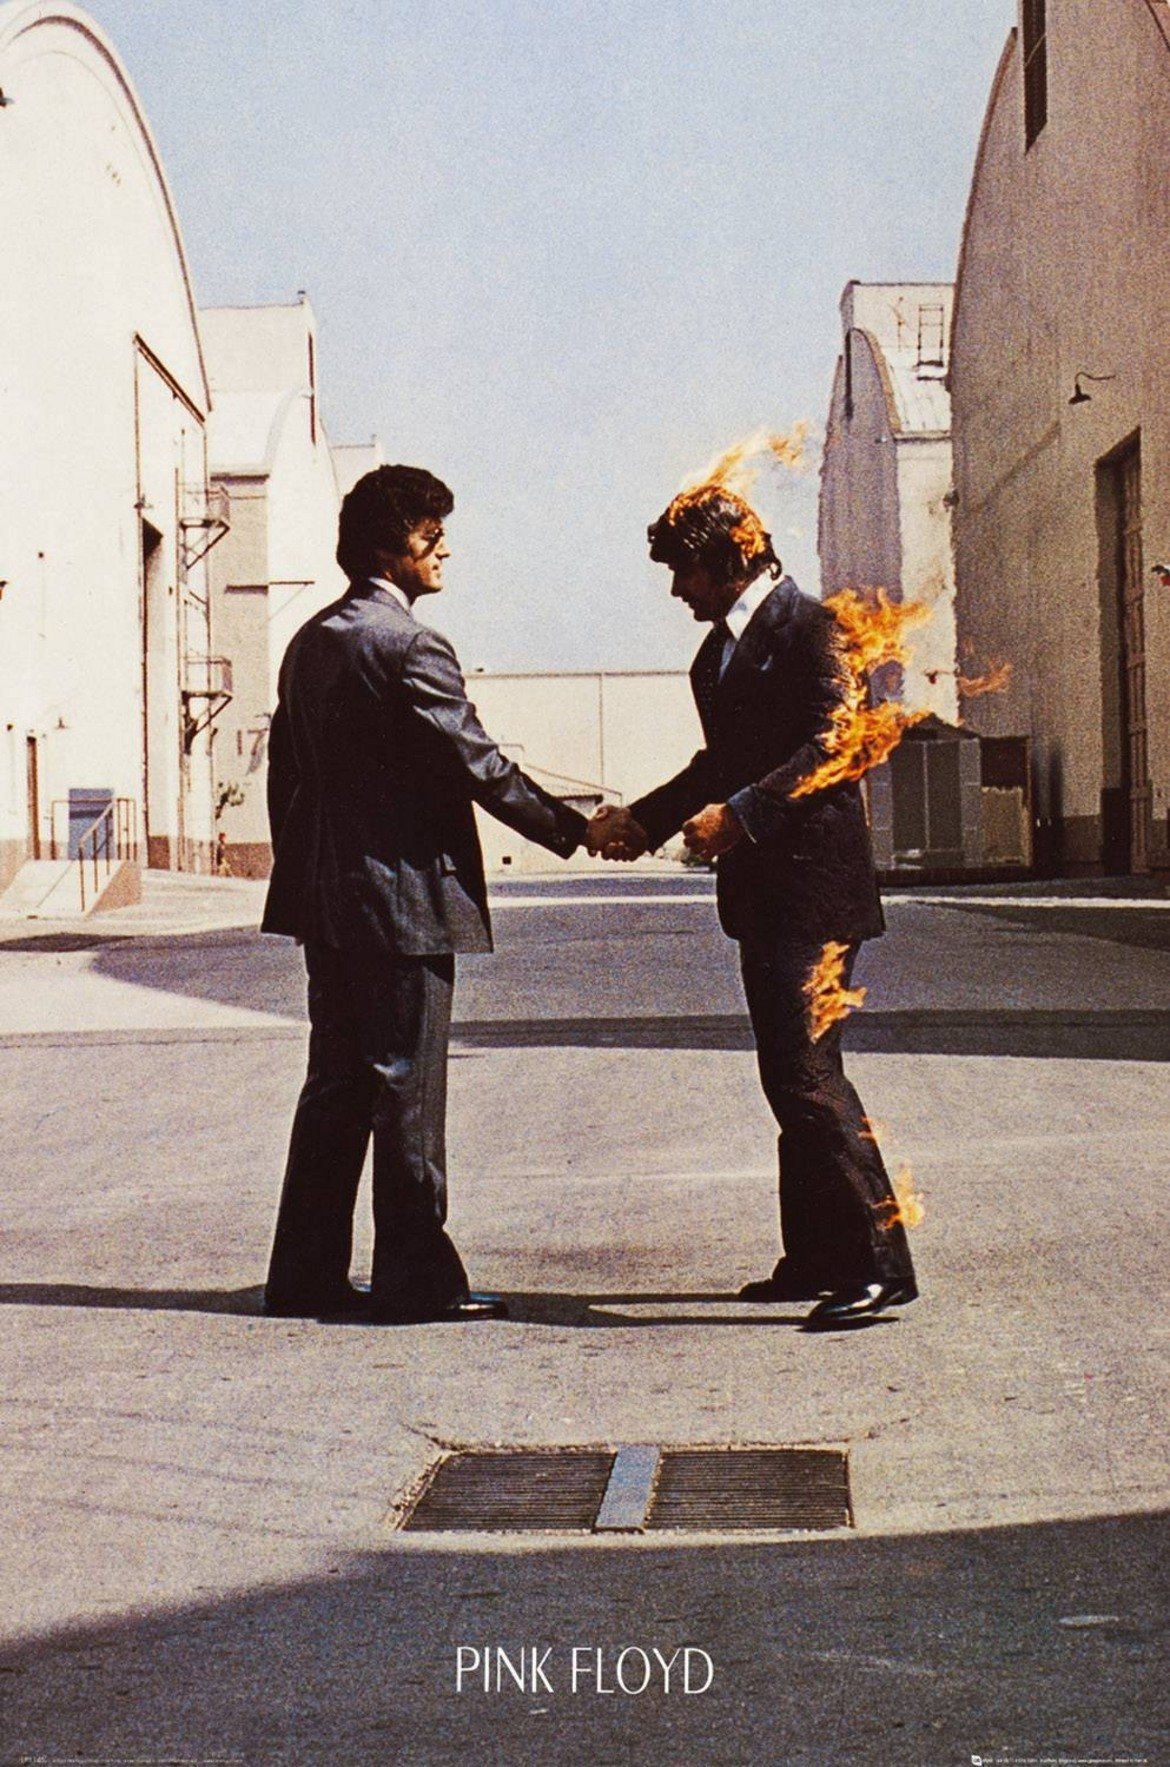 Pink Floyd - Wish You Were Here
Ако някога на Земята дойдат извънземни и под заплахата на ужасяващите си оръжия принудят хората на планетата да изберат (с много компромиси и спорове, разбира се) любимата песен въобще в историята, най-вероятно това ще е Wish You Were Here. Тя е просто прекрасна, гали всички онези тъжни нотки в настроението ти и те кара да се замисляш за човек, когото наистина би искал да беше по-близо.